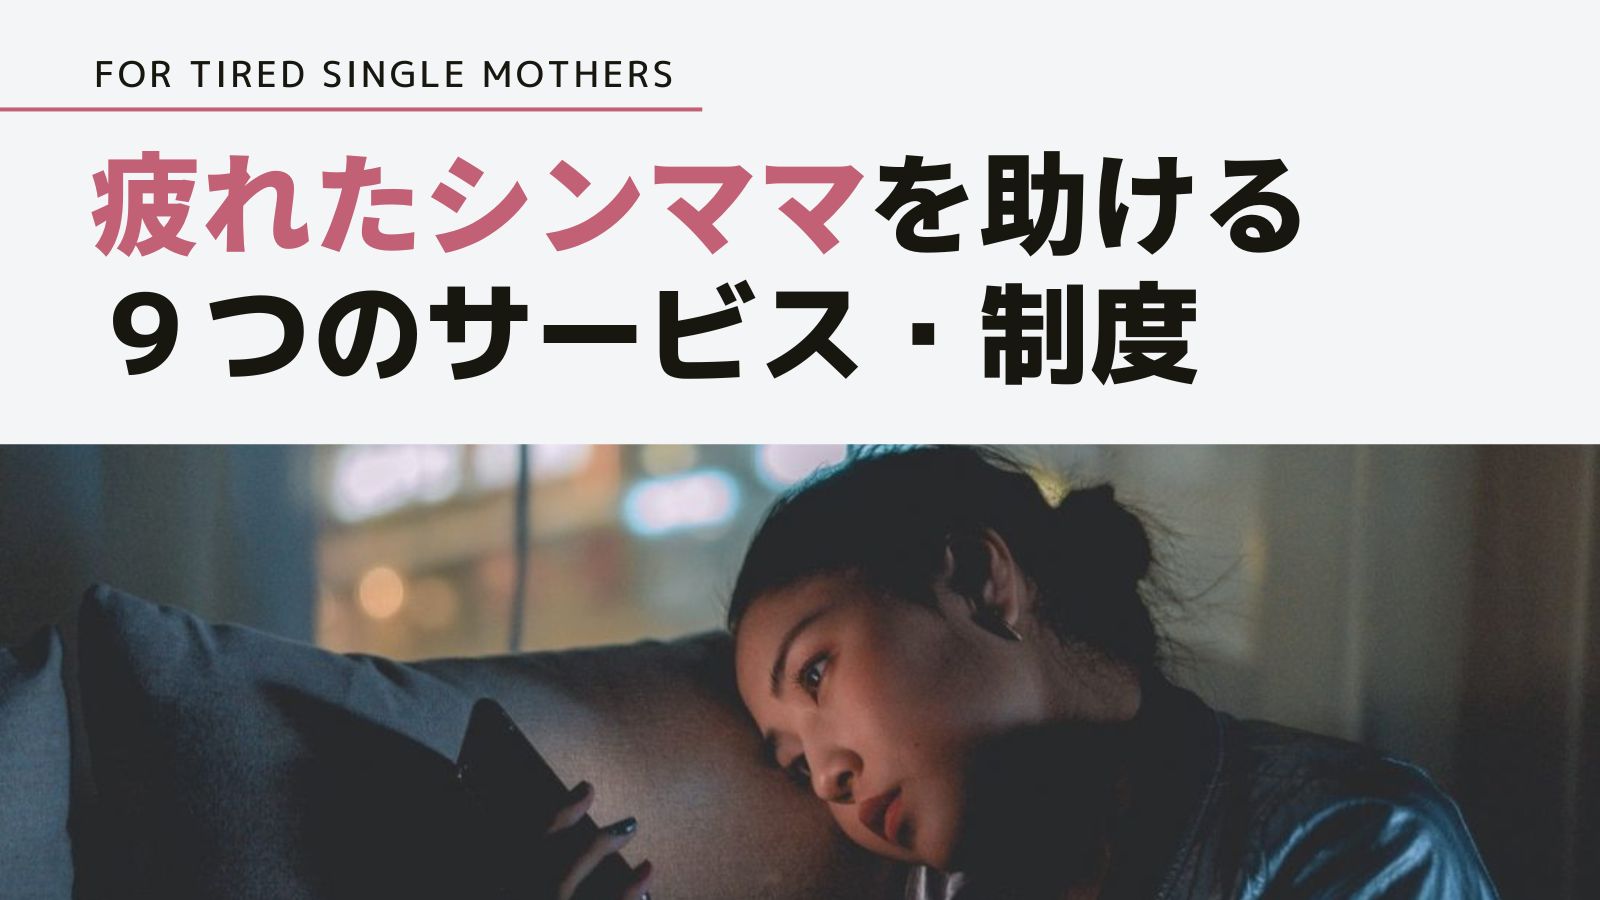 【有益】疲れたシングルマザーを助けてくれる、9つのサービス・制度